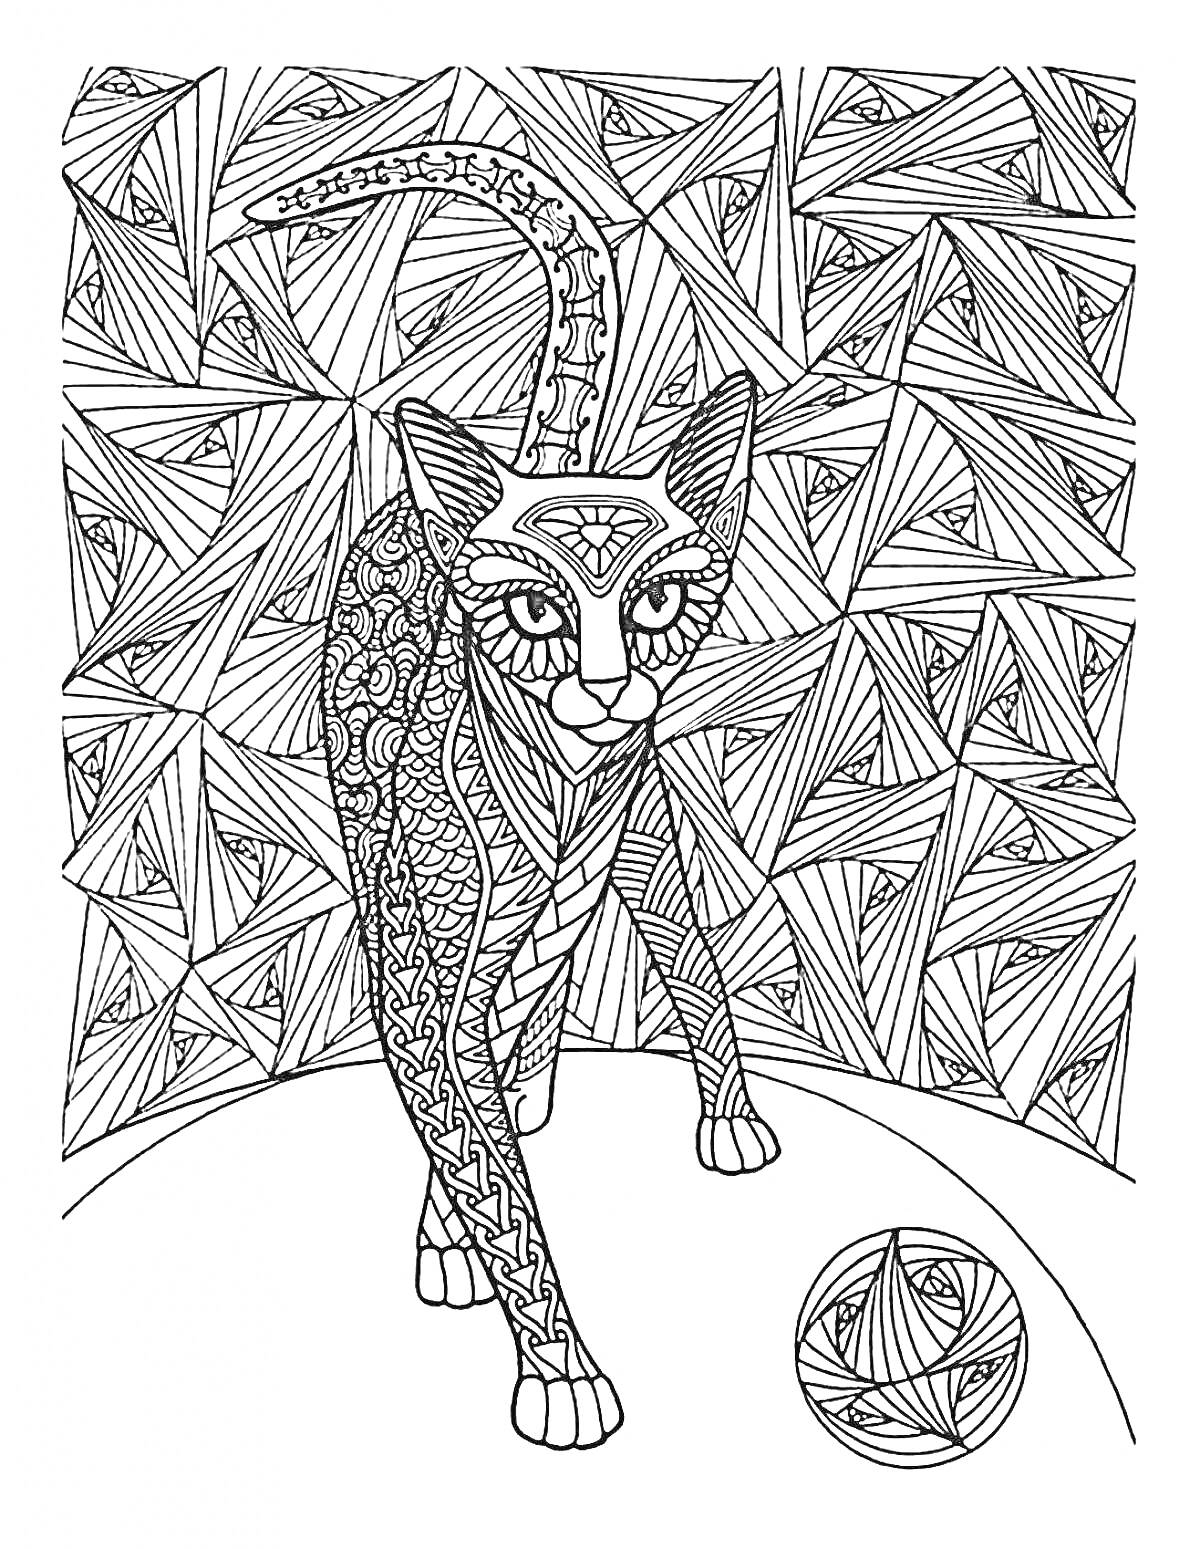 Раскраска Антистресс раскраска с грациозной кошкой, окруженной абстрактными узорами и мячом